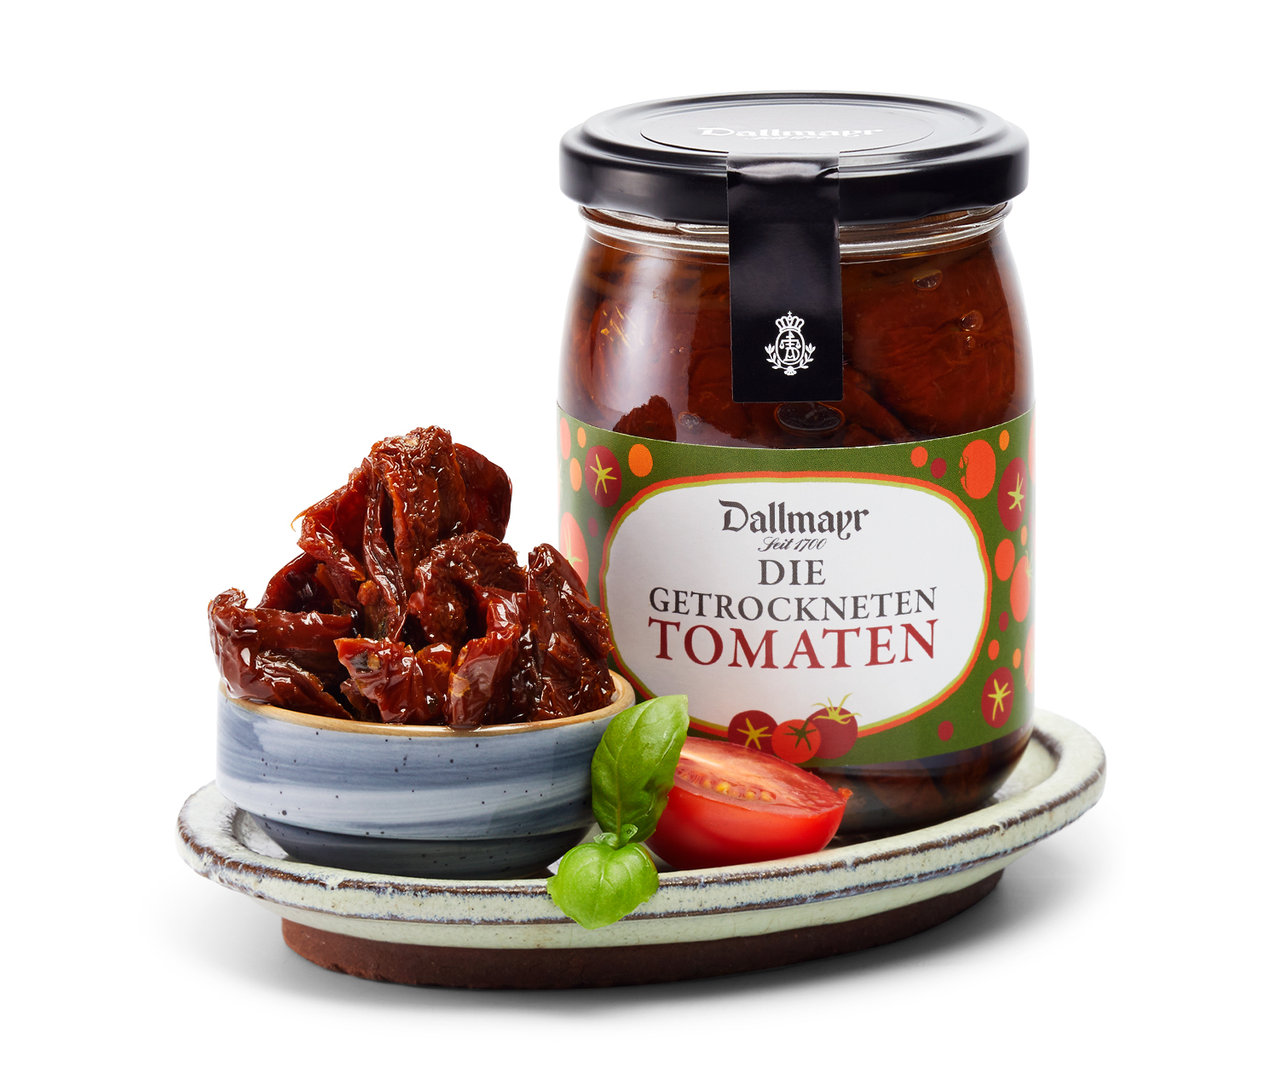 Die getrockneten Tomaten Dallmayr von Alois Dallmayr KG